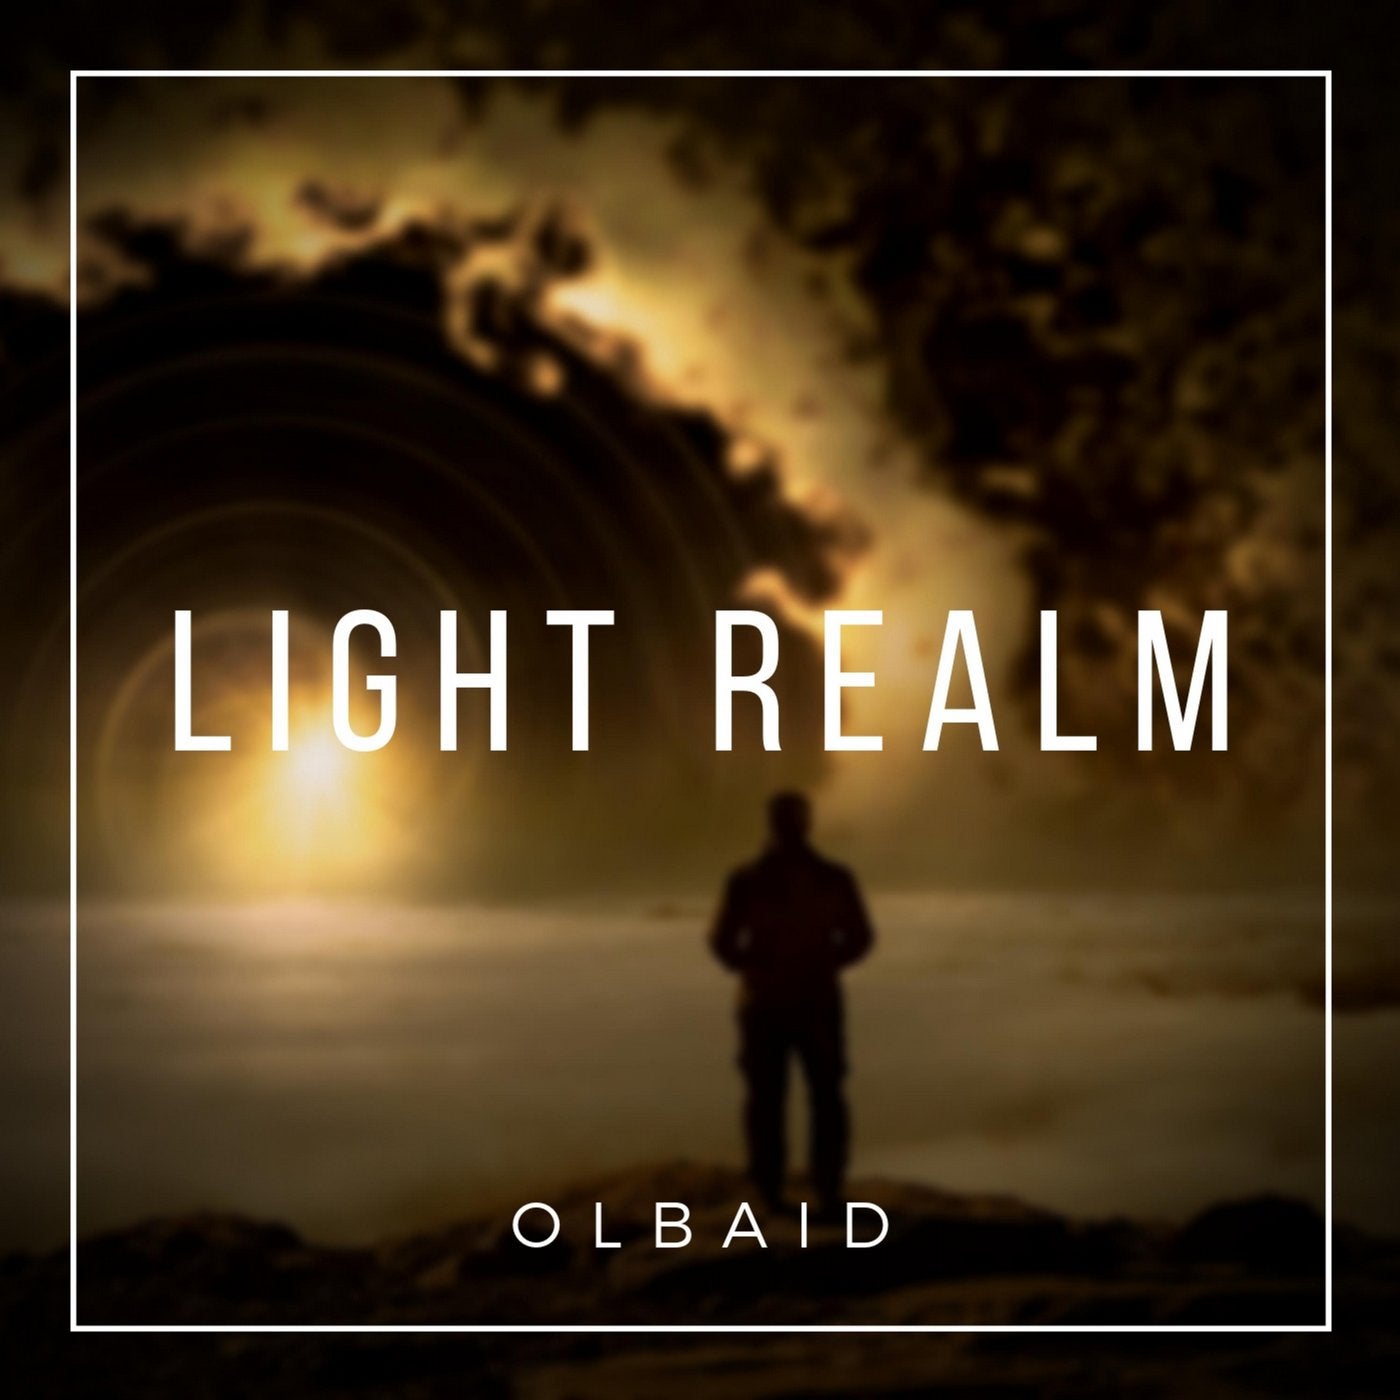 Light Realm